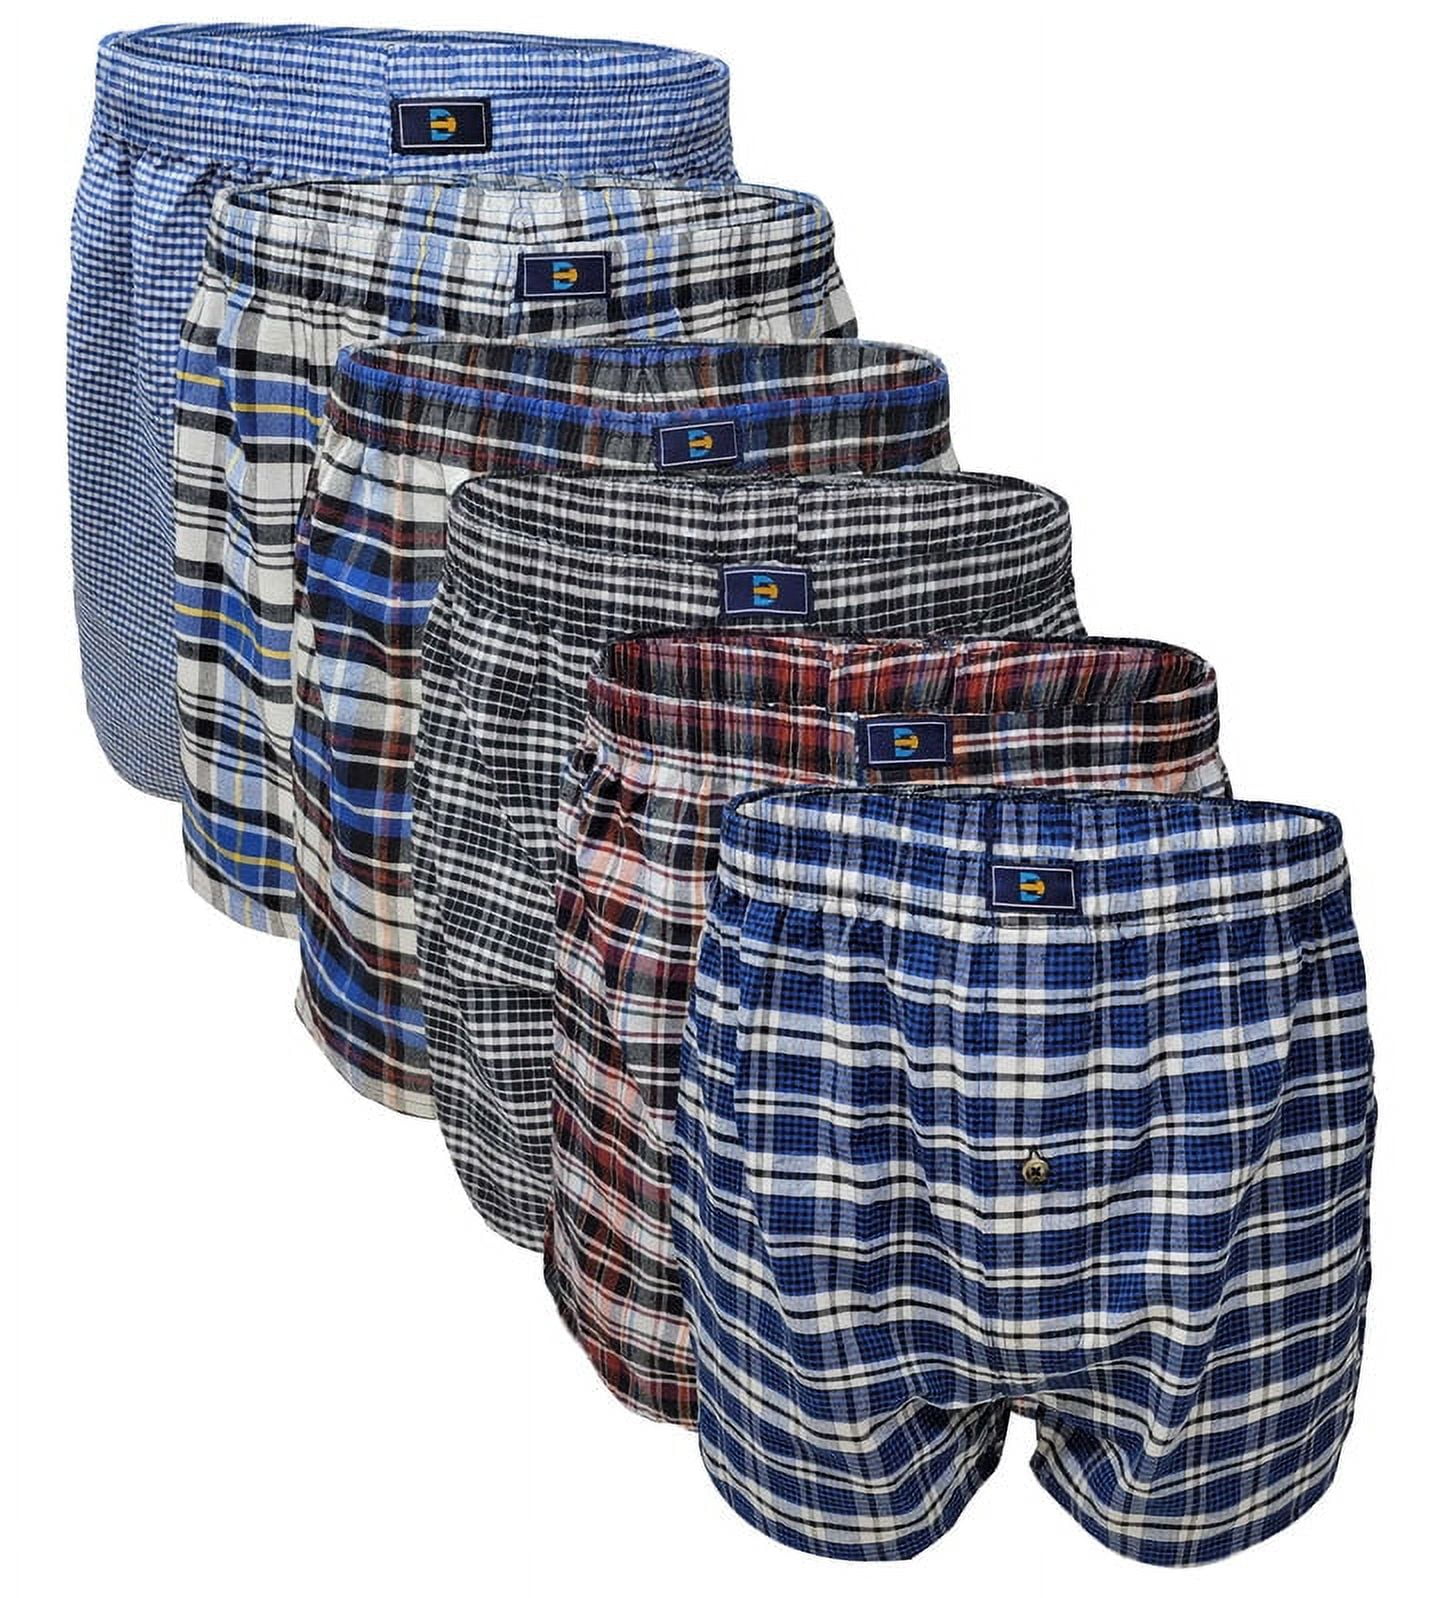 differenttouch Men's Palid Boxer Shorts Underwear, 6-pack - Walmart.com